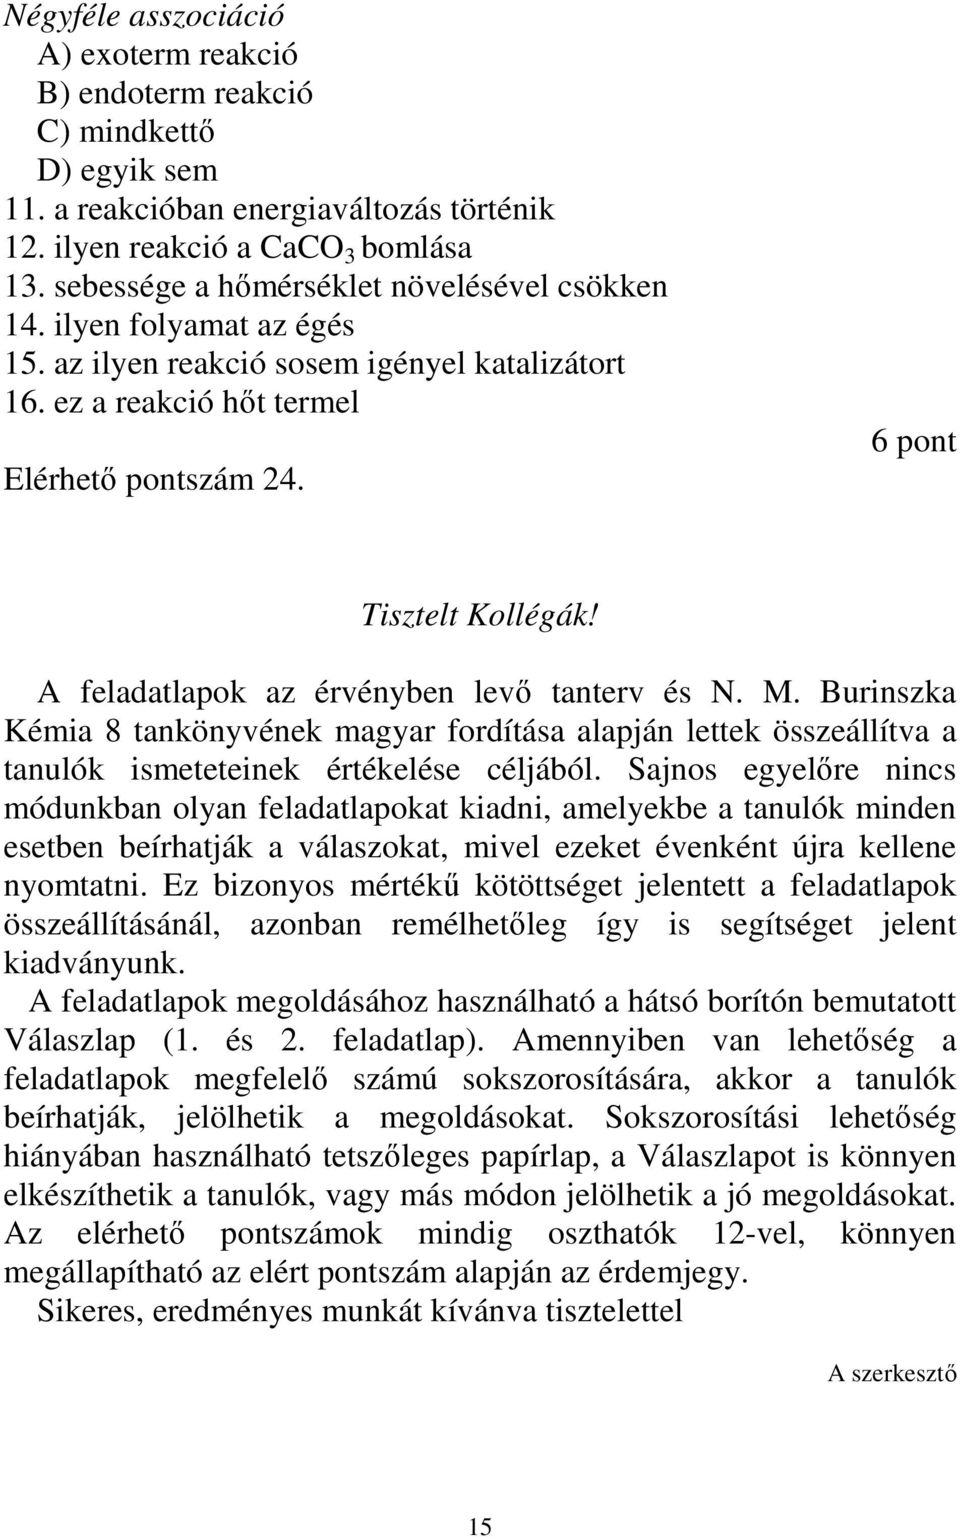 A feladatlapok az érvényben levı tanterv és N. M. Burinszka Kémia 8 tankönyvének magyar fordítása alapján lettek összeállítva a tanulók ismeteteinek értékelése céljából.